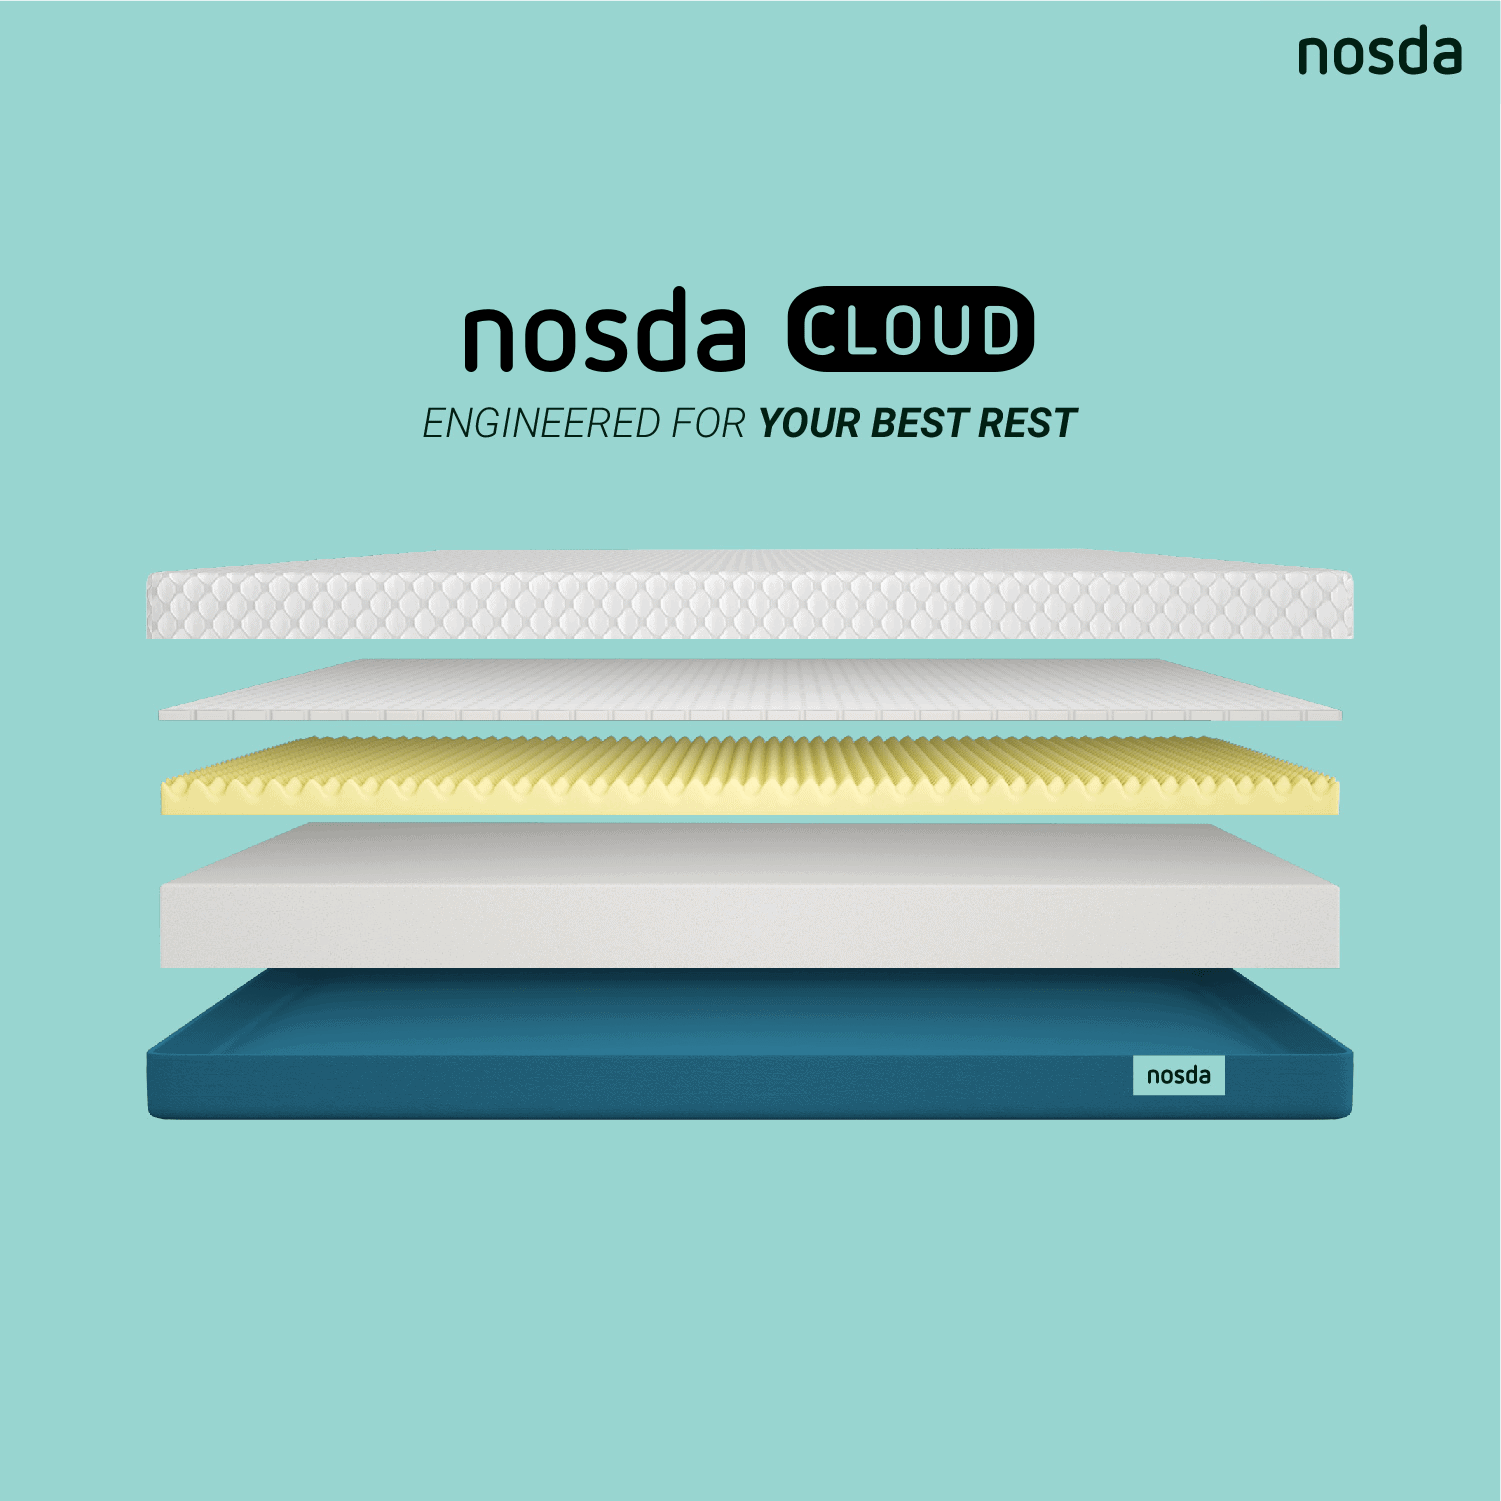 nosda cloud comparison page